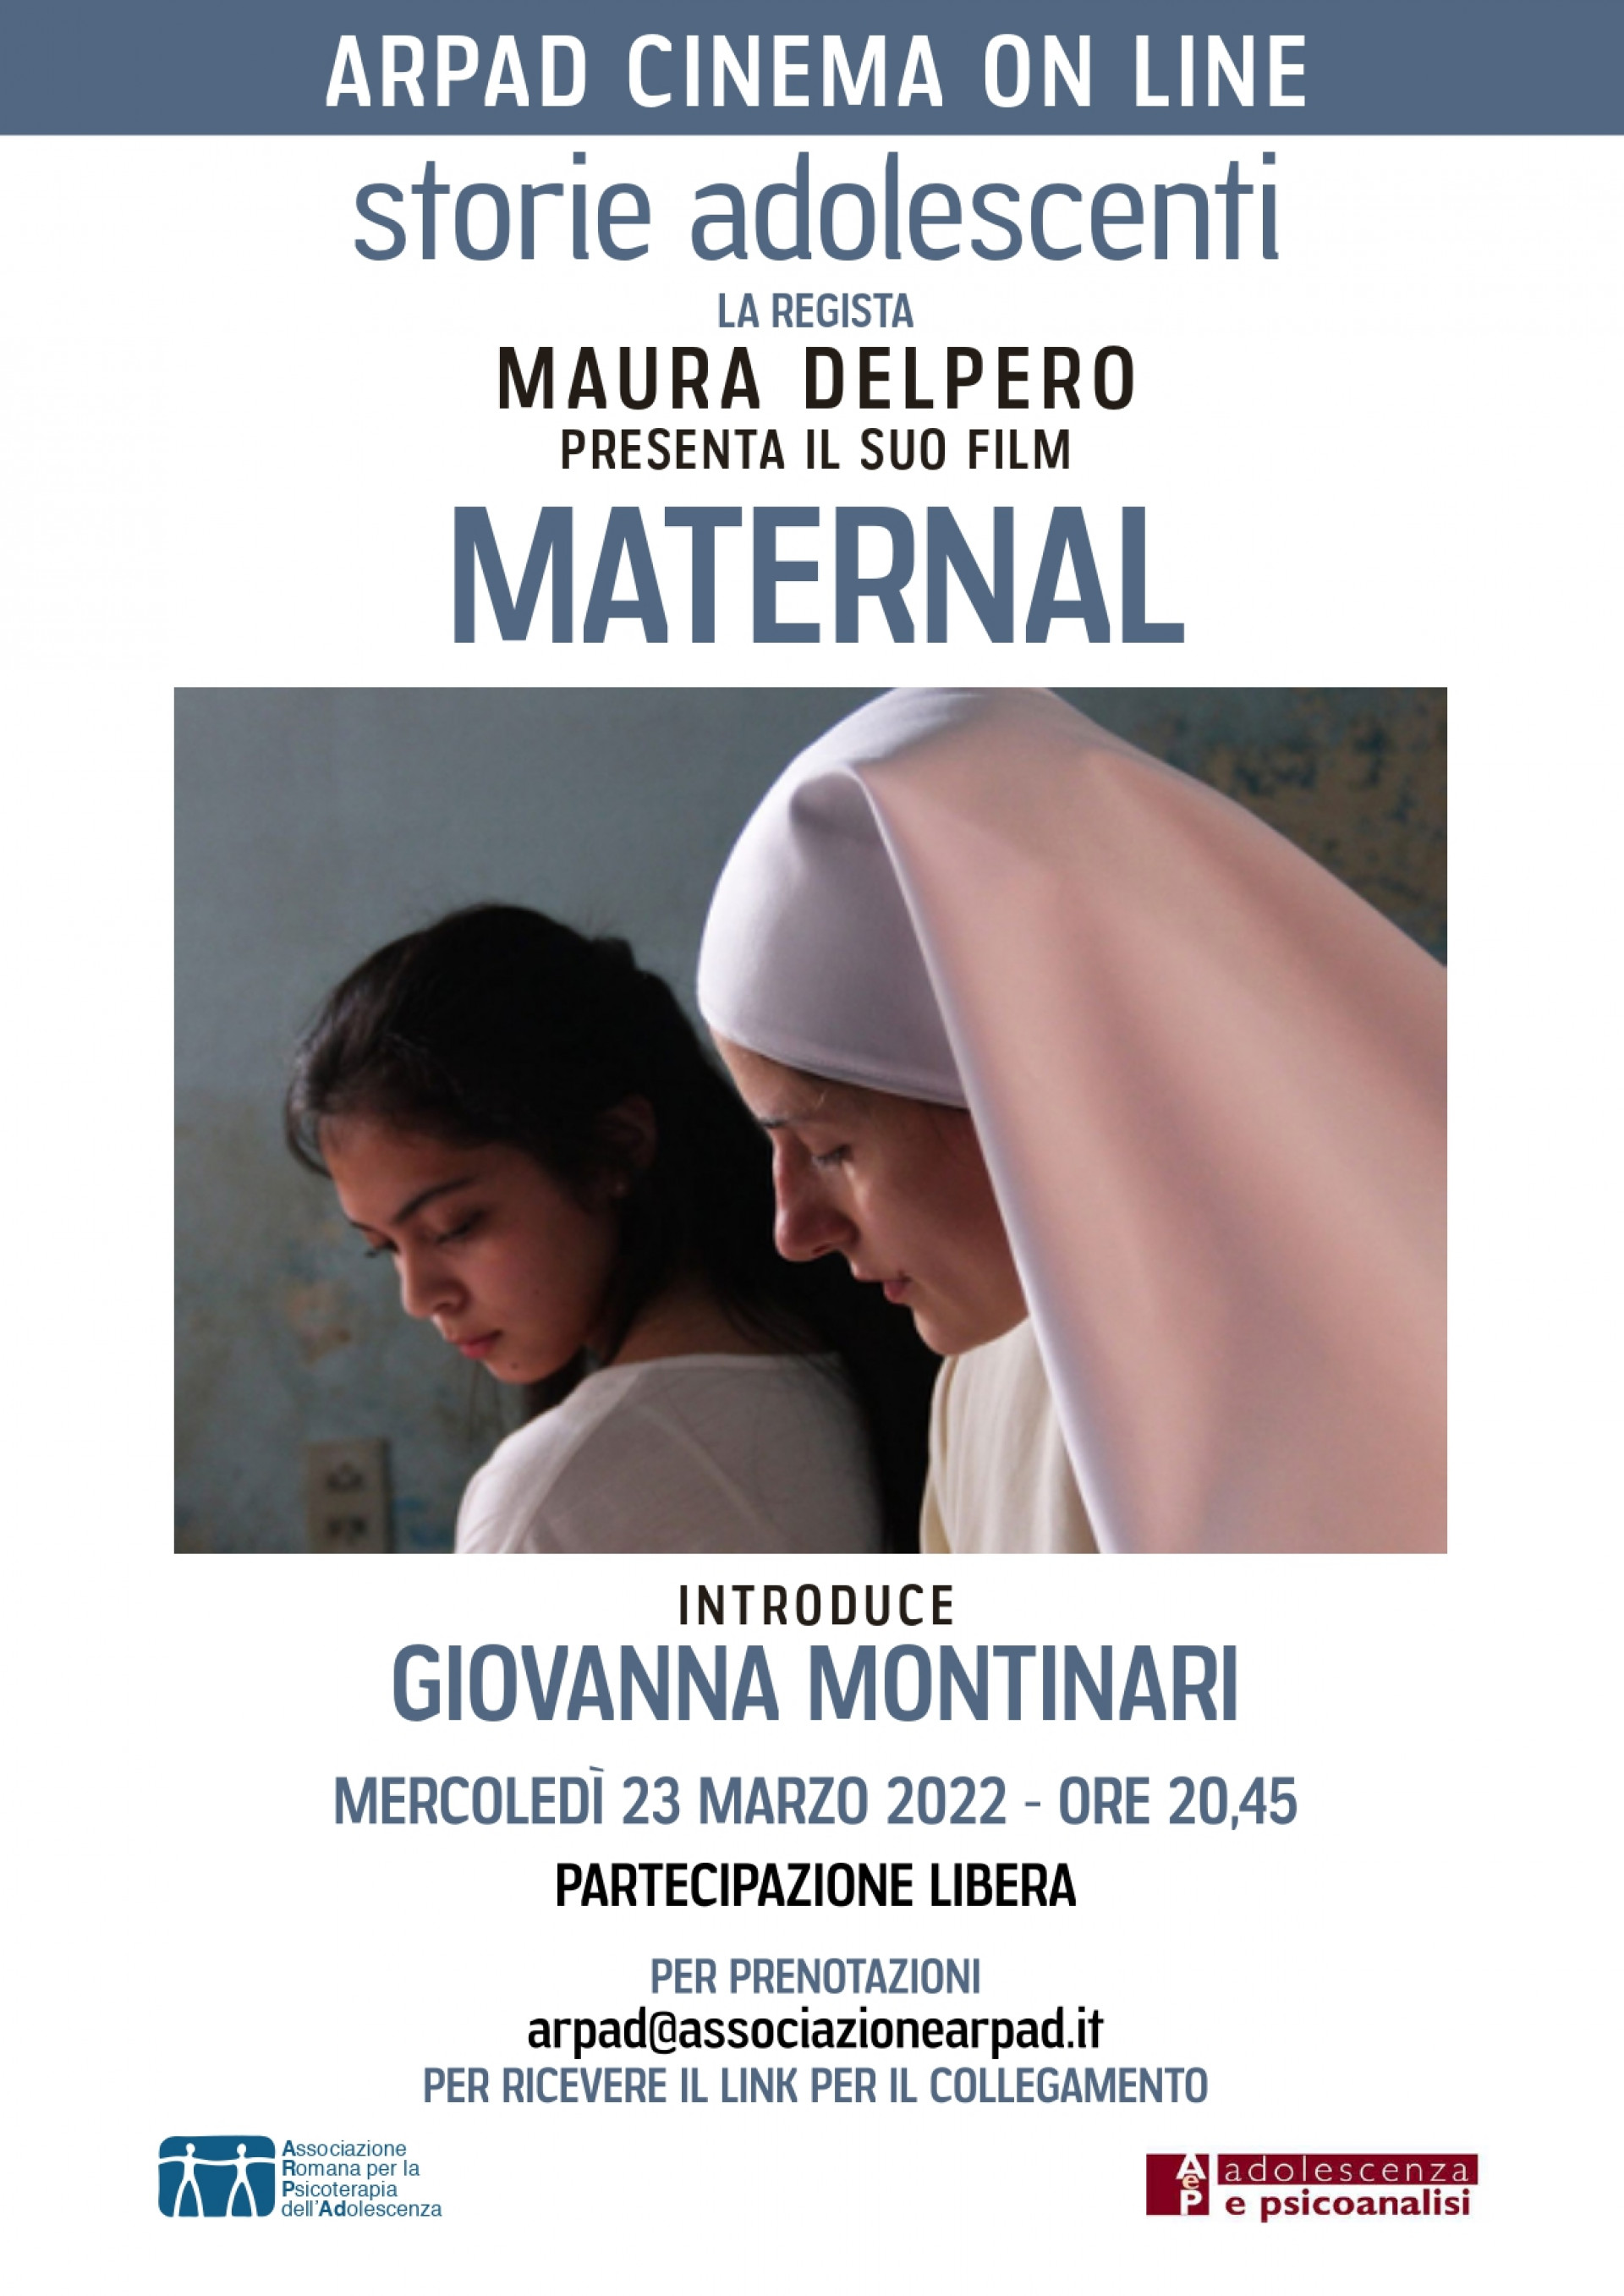 ARPAd CINEMA online - film "MATERNAL" di Maura Delpero